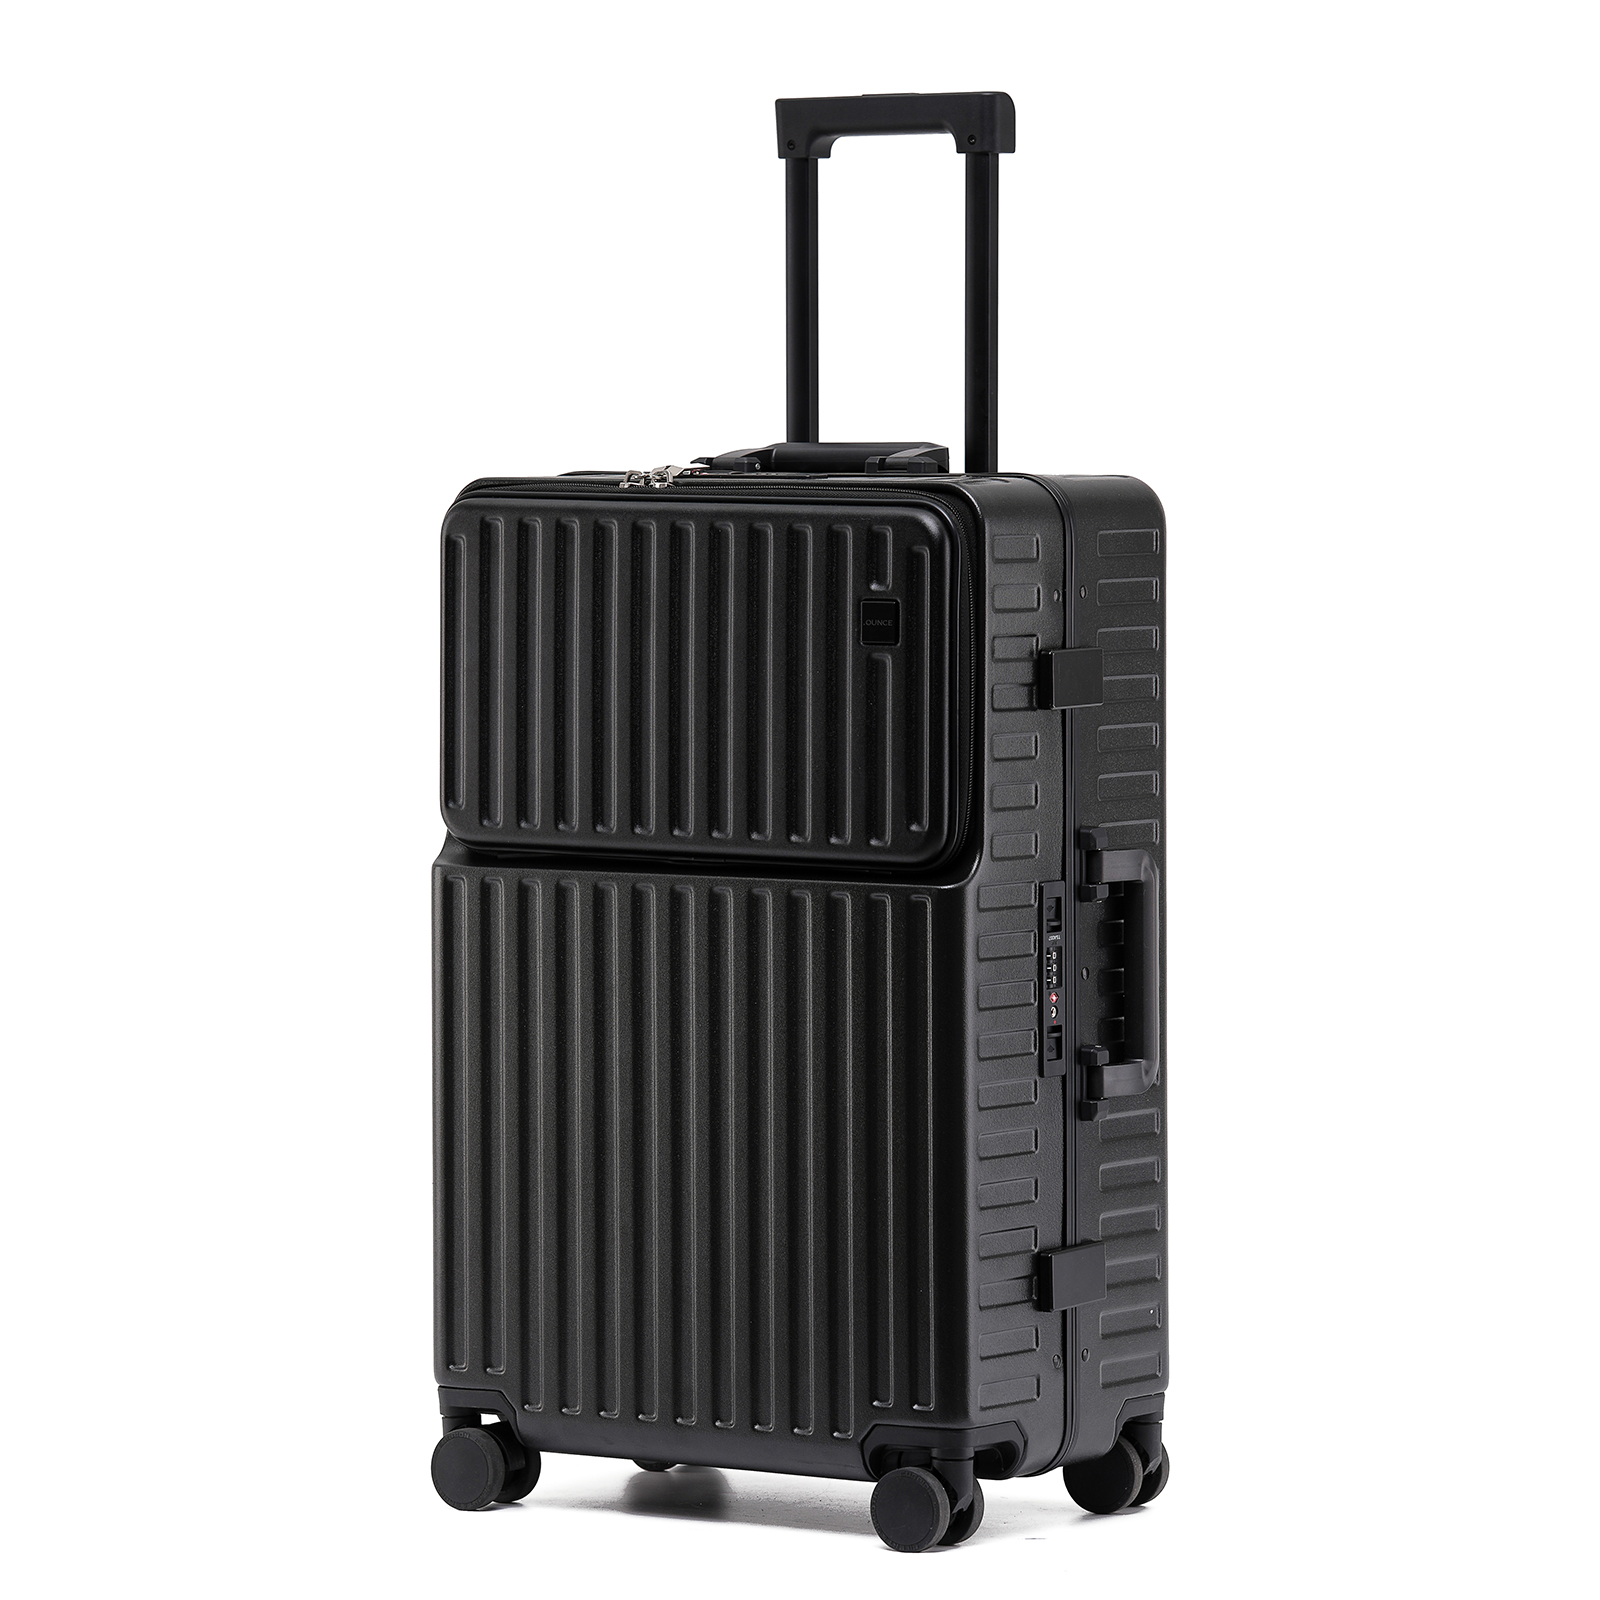 スーツケース 多機能 キャリーケース STYLISHJAPAN 公式 機内持ち込み アルミフレーム カップホルダー フロントポケット .OUNCE  mfsc2067s